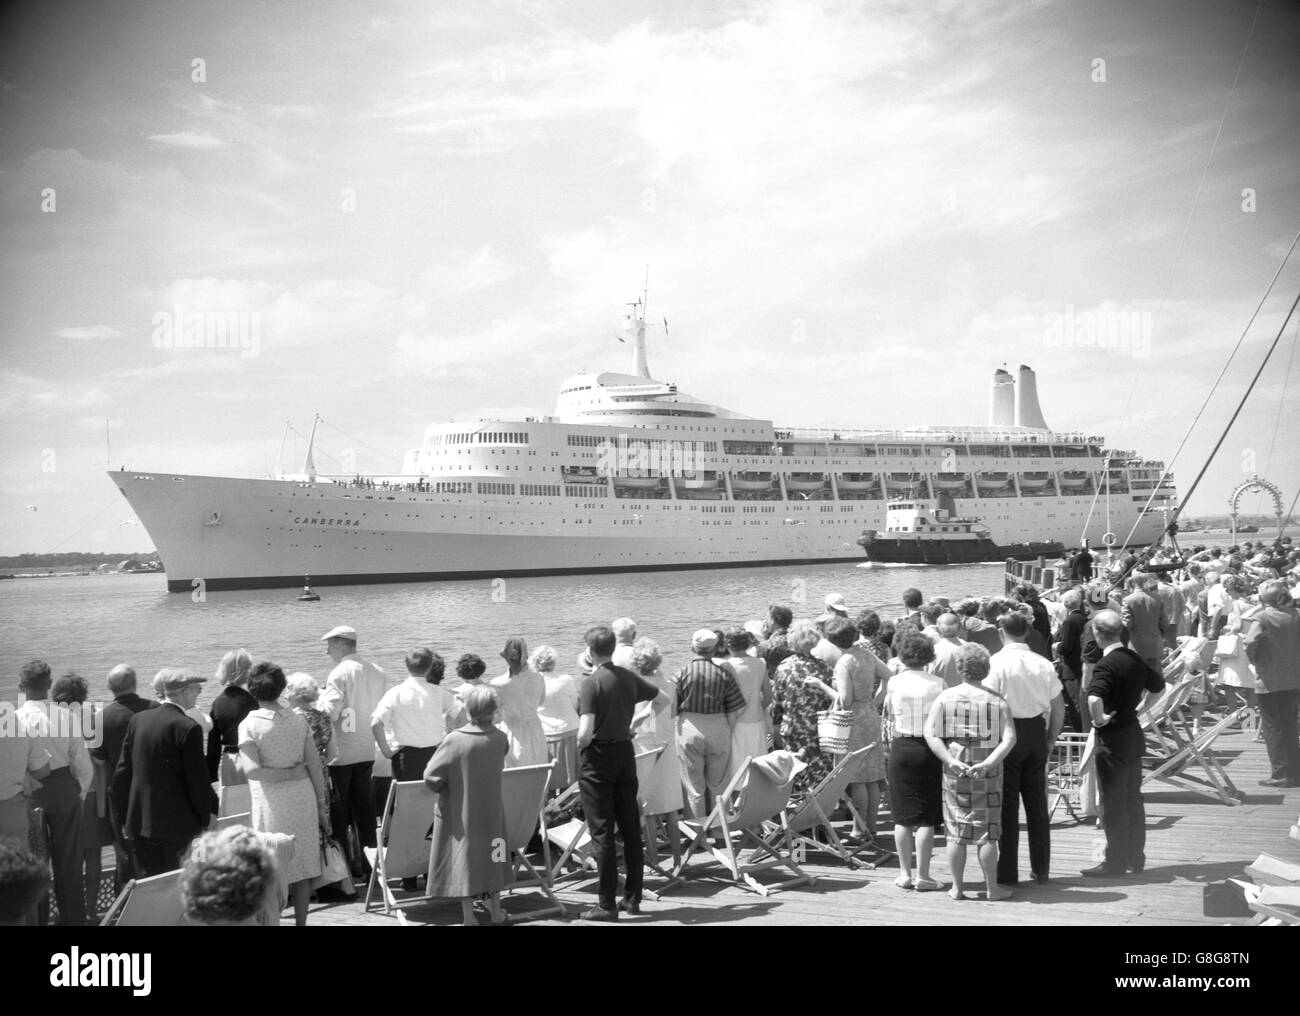 Wochenend-Urlauber, die sich in Liegestühlen sonnen hatten, geben dem Liner Canberra einen Standing-off, als sie Southampton nach Australien verlässt. Sie war das erste Schiff, das seit dem Ende des Matrosenstreiks mit Passagieren aus dem Hafen segelte. Stockfoto